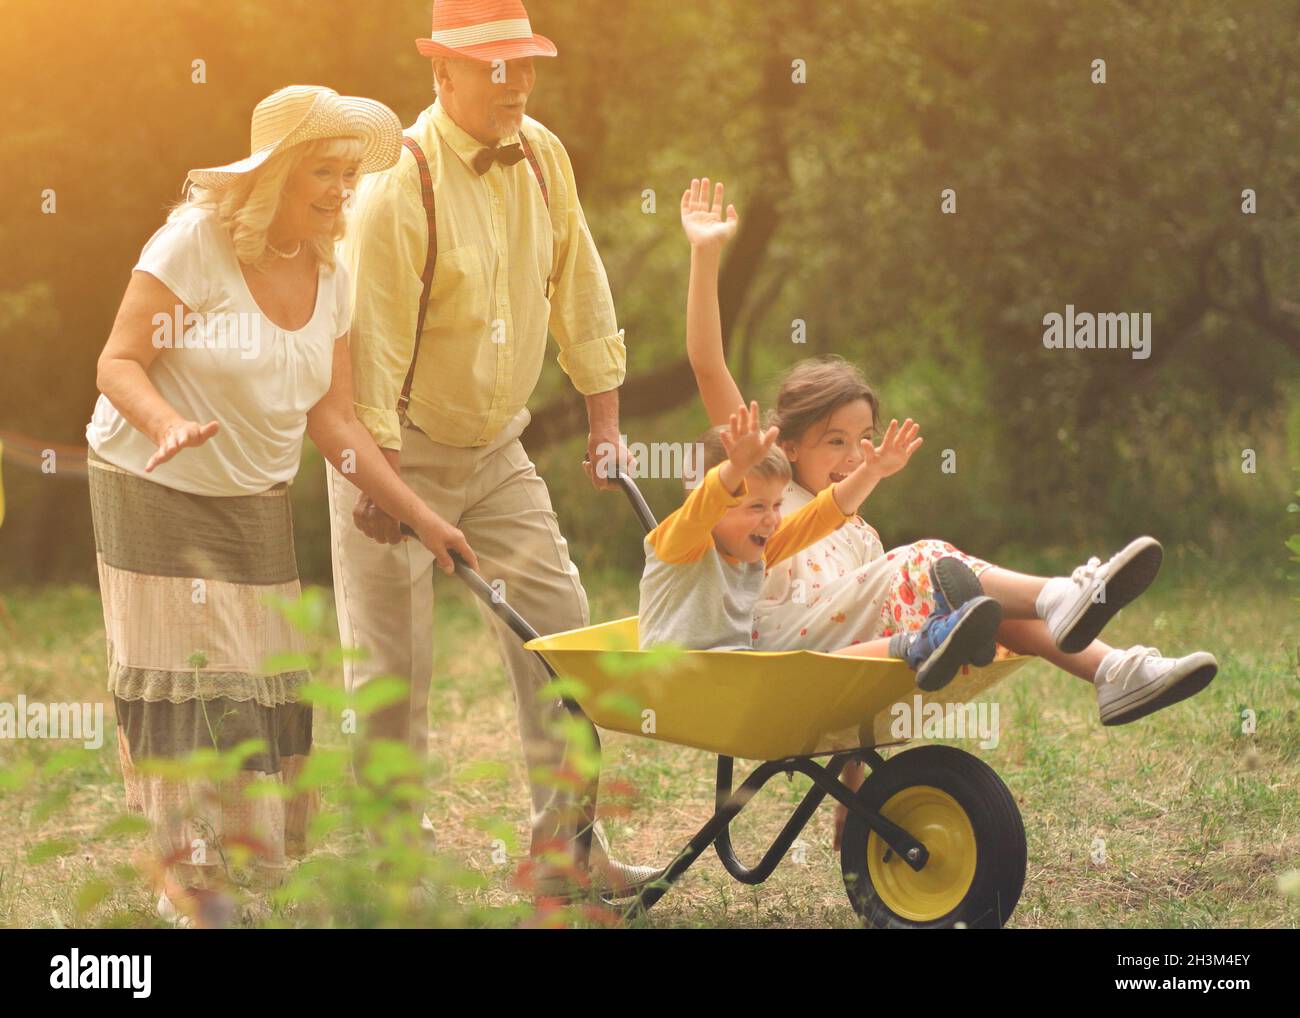 Grandma And Grandpa Are Riding Their Grandchildren In A Wheelbarrow Stock Photo